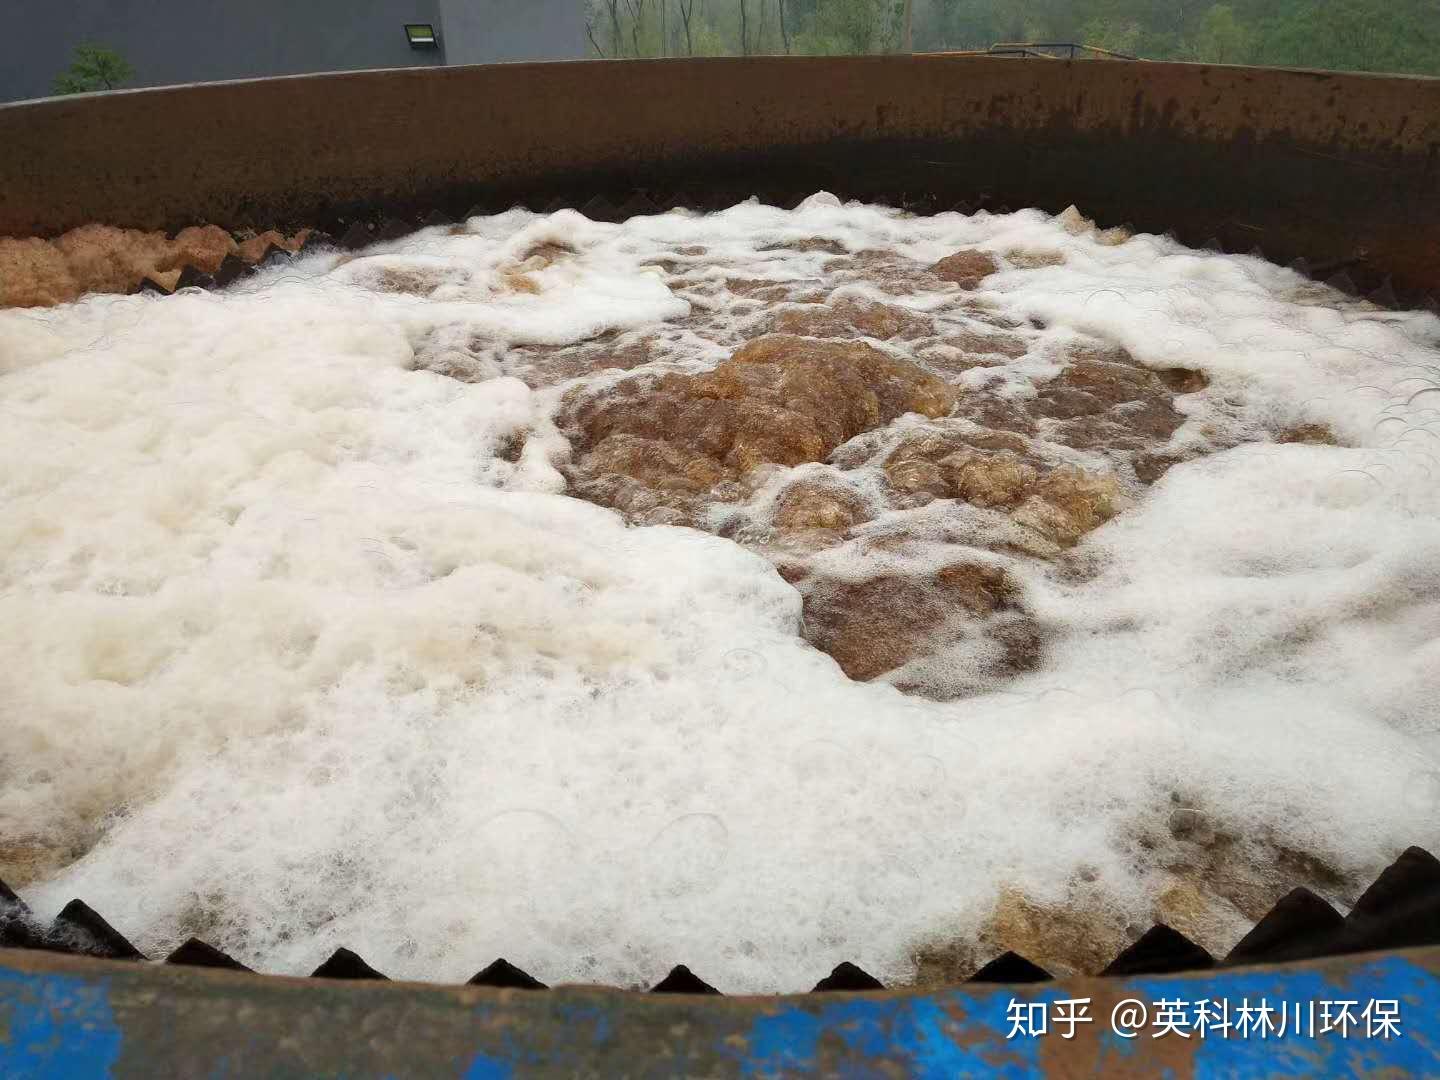 高温烧结微电解合金填料能在哪些工业废水中使用